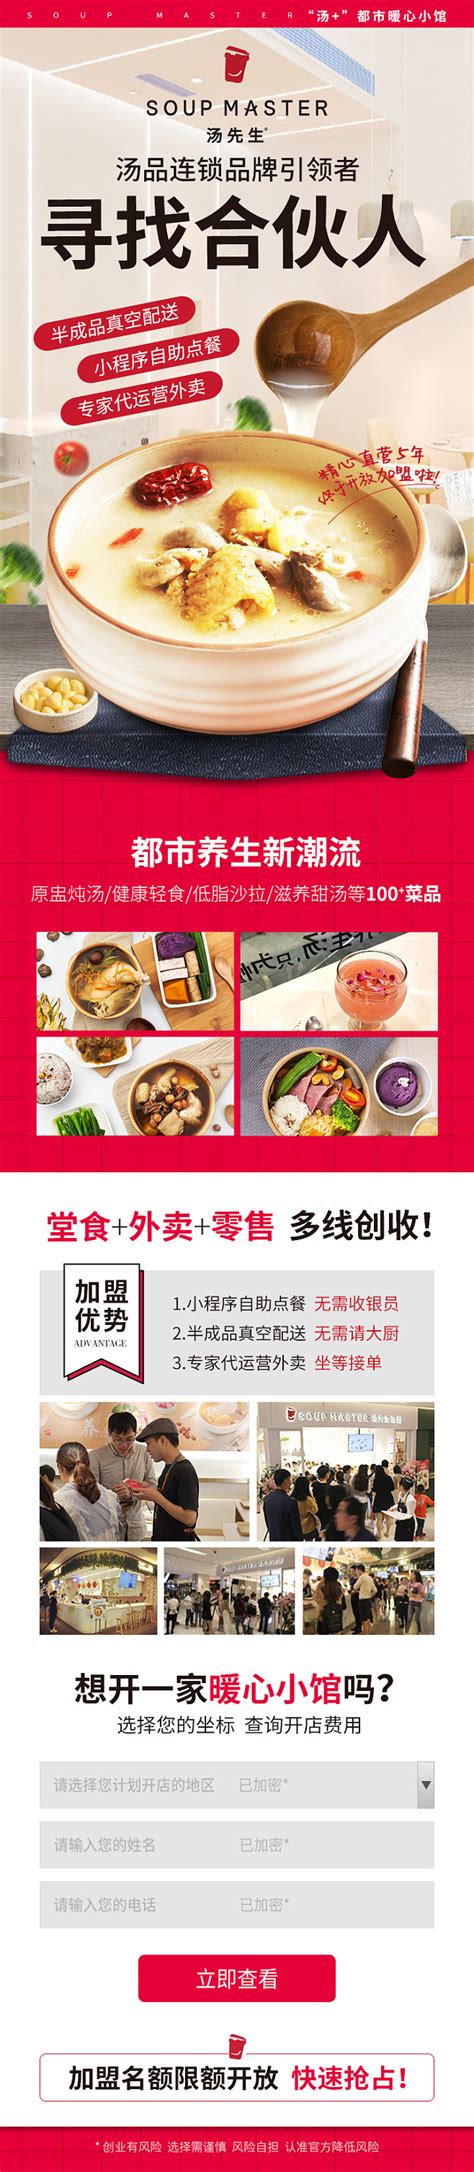 炫彩简约公司介绍连锁餐饮业务营销推广加盟招商通用PPT模板 - 小白办公